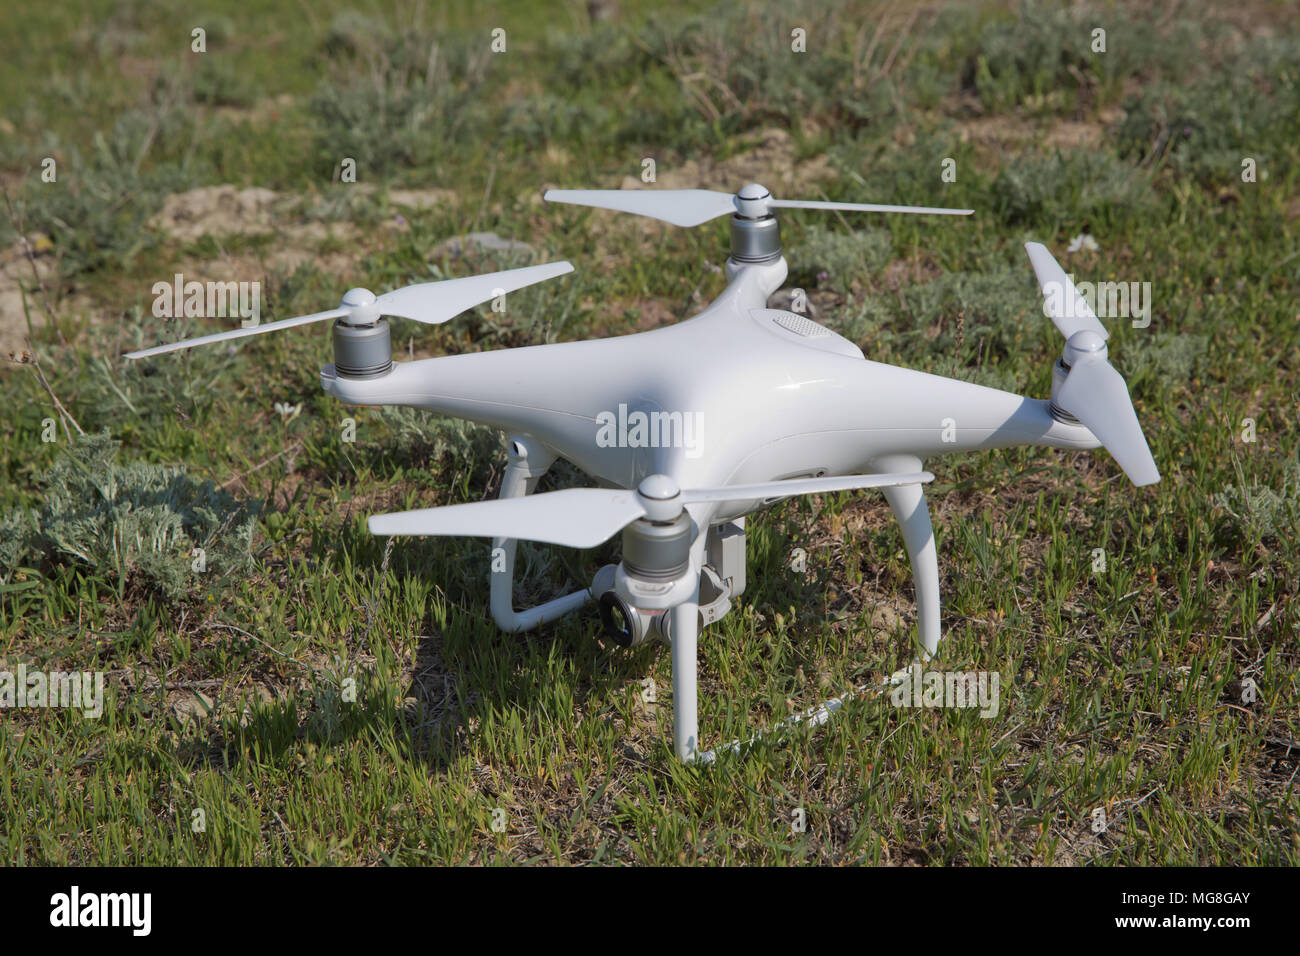 Bourdon blanc avec appareil photo numérique flying in sky sur la montagne  Drone avec une haute résolution appareil photo numérique. Drone avec  appareil photo dans l'herbe se préparent à voler Photo Stock -